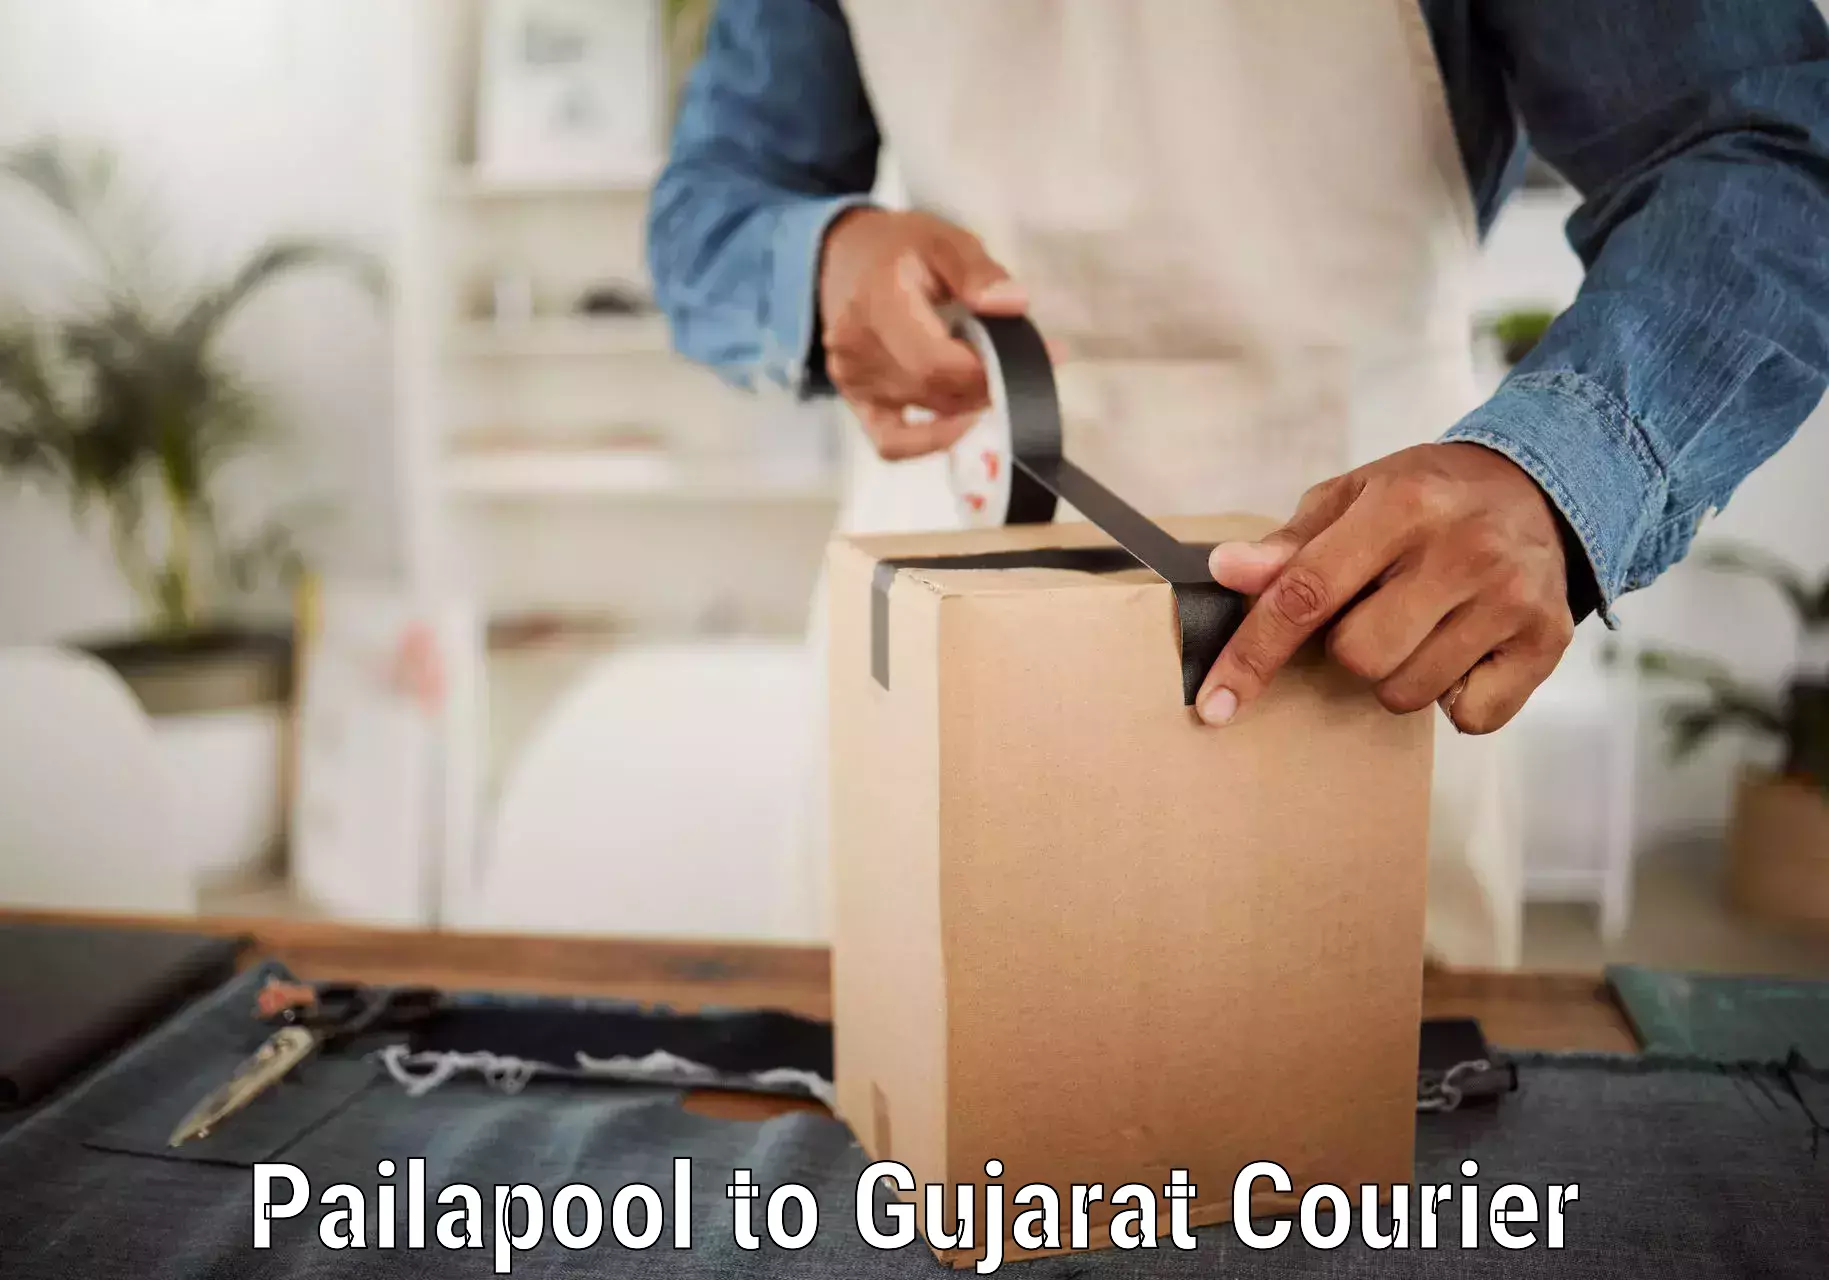 Urgent courier needs in Pailapool to IIIT Surat